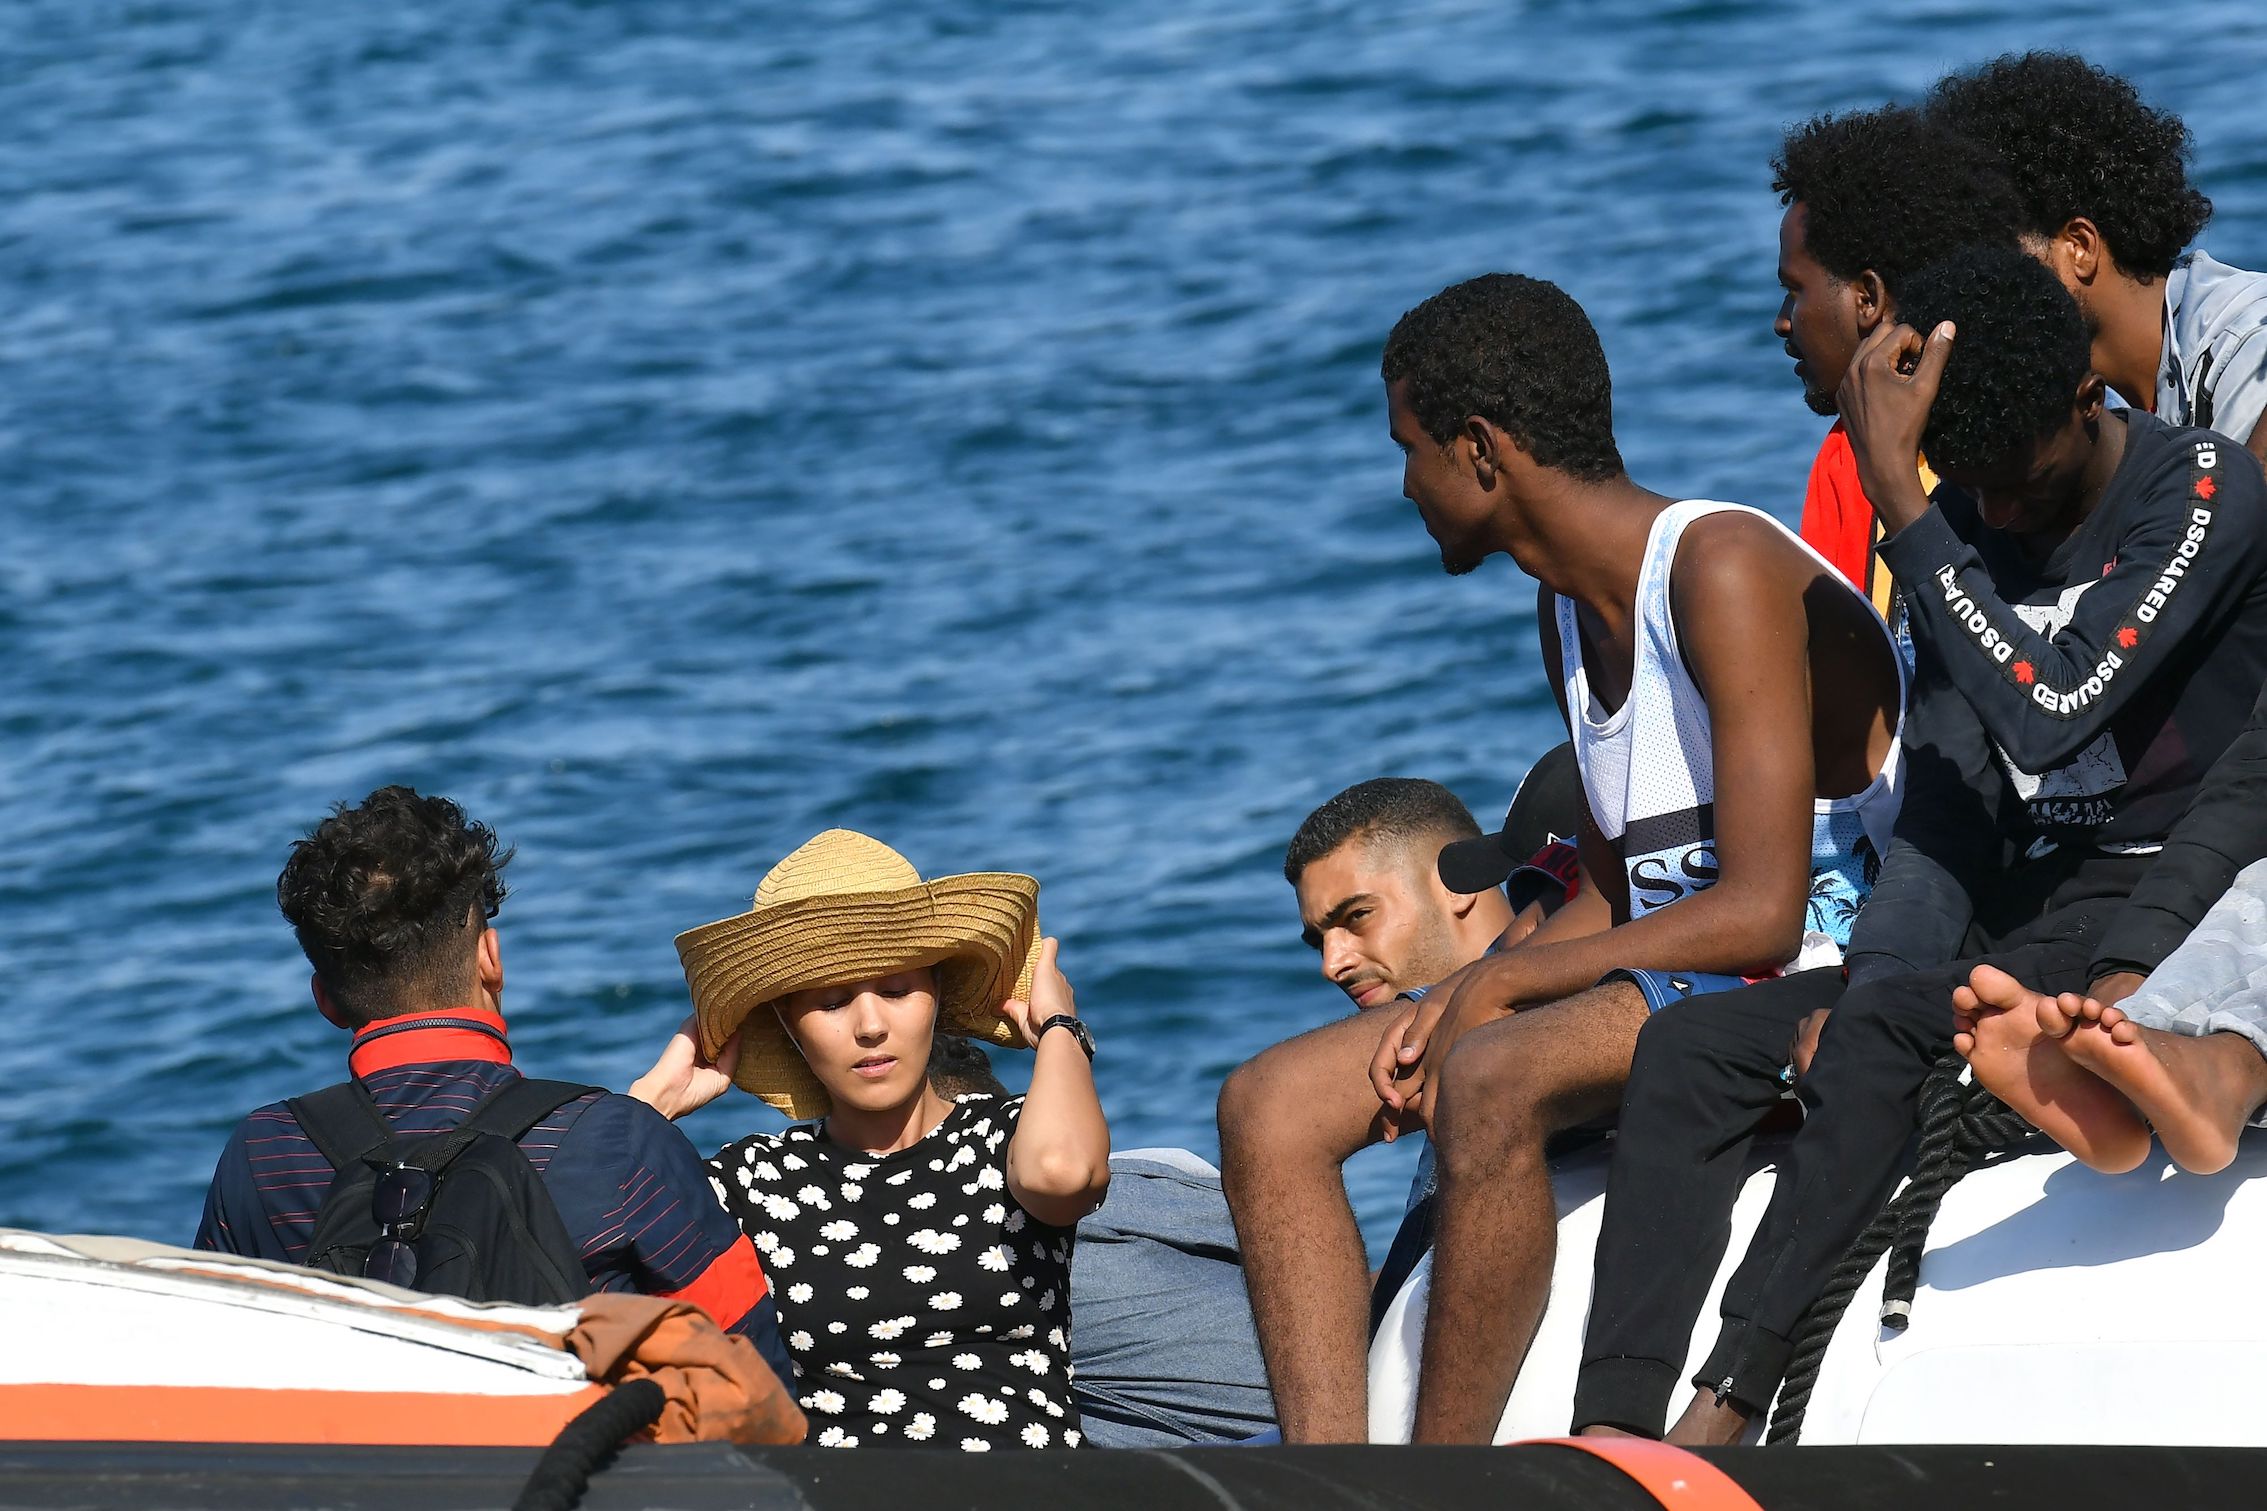 قرابة 4 آلاف تونسي وصلوا إيطاليا عبر قوارب في المتوسط منذ بداية العام حتى يوليو